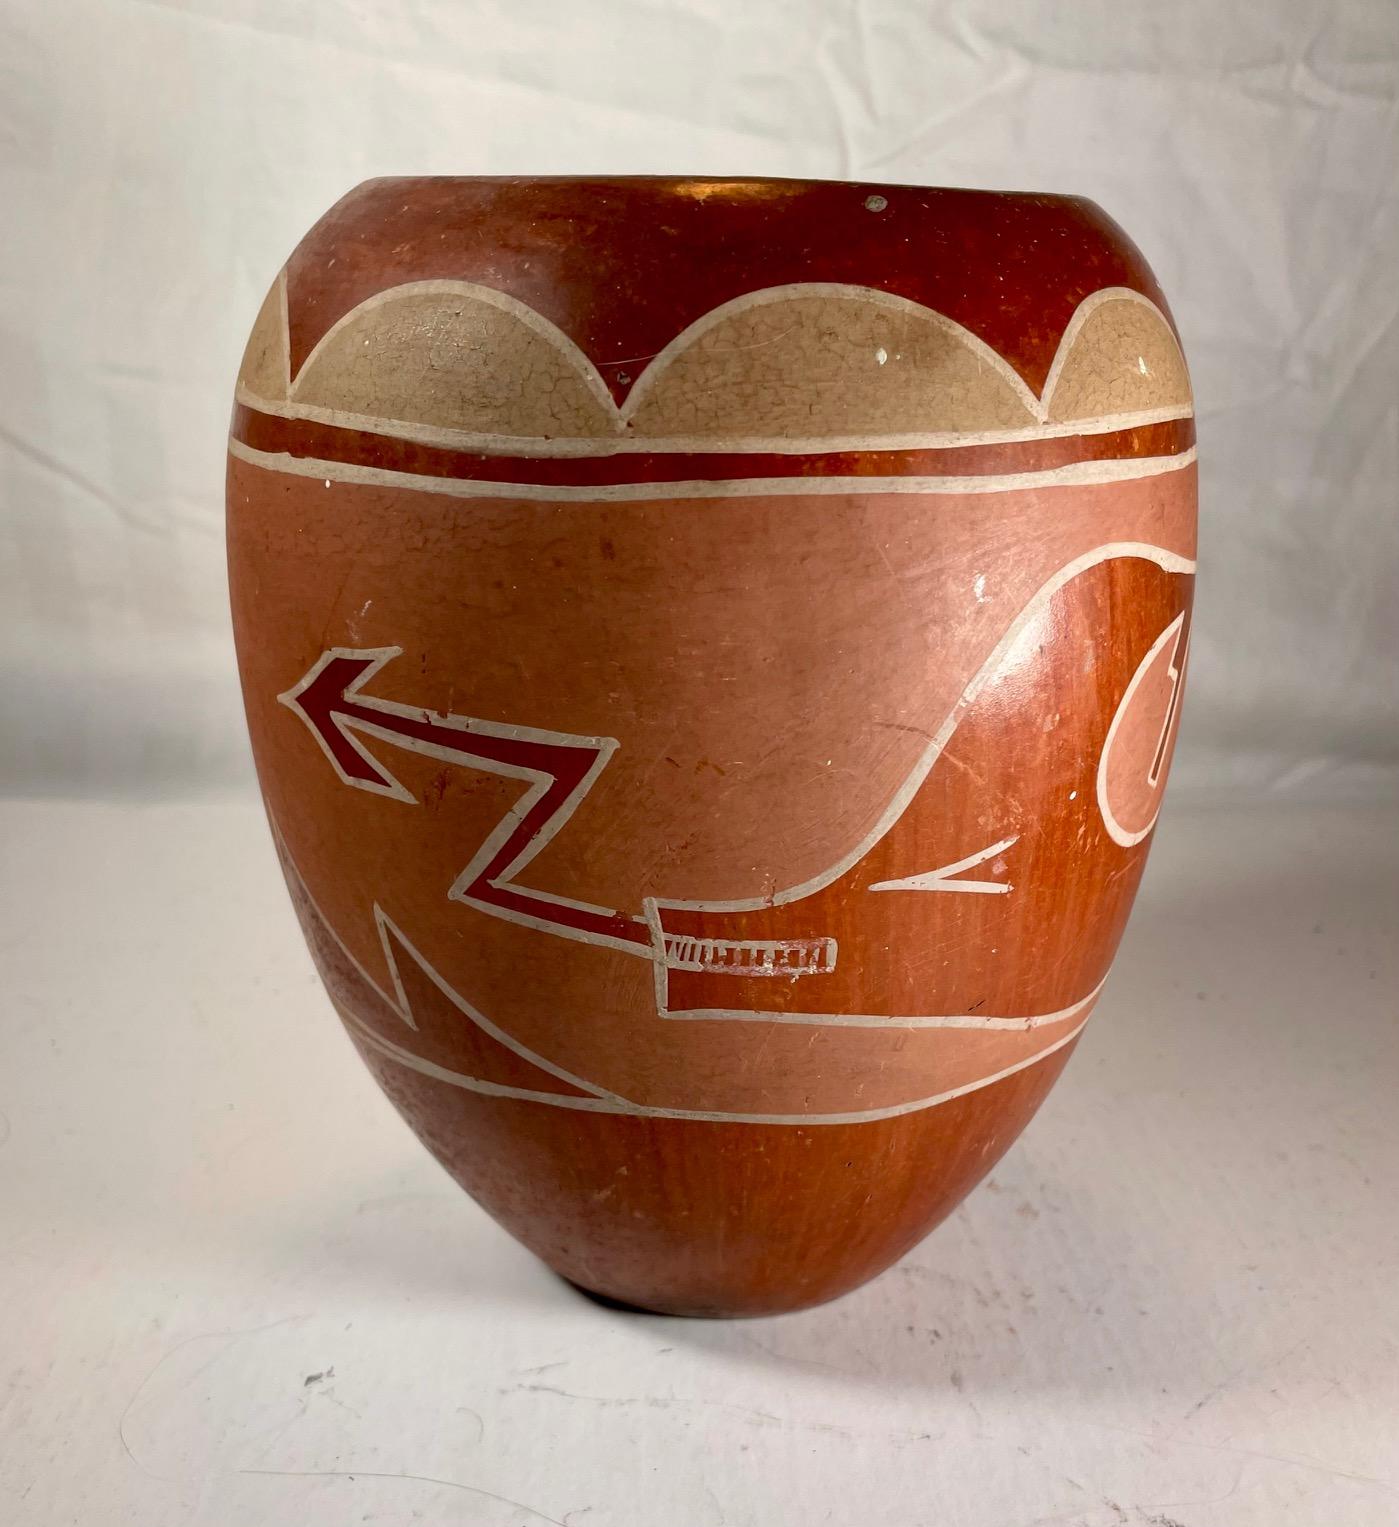 Grand pot à poterie Hopi Pueblo Redware Scraffito Avanyu Design.

Grande jarre en poterie Hopi - San Ildefonso rouge, gravée de façon complexe et entièrement polie. Le scraffito du serpent d'eau (Avanyu) décore la circonférence dans un motif